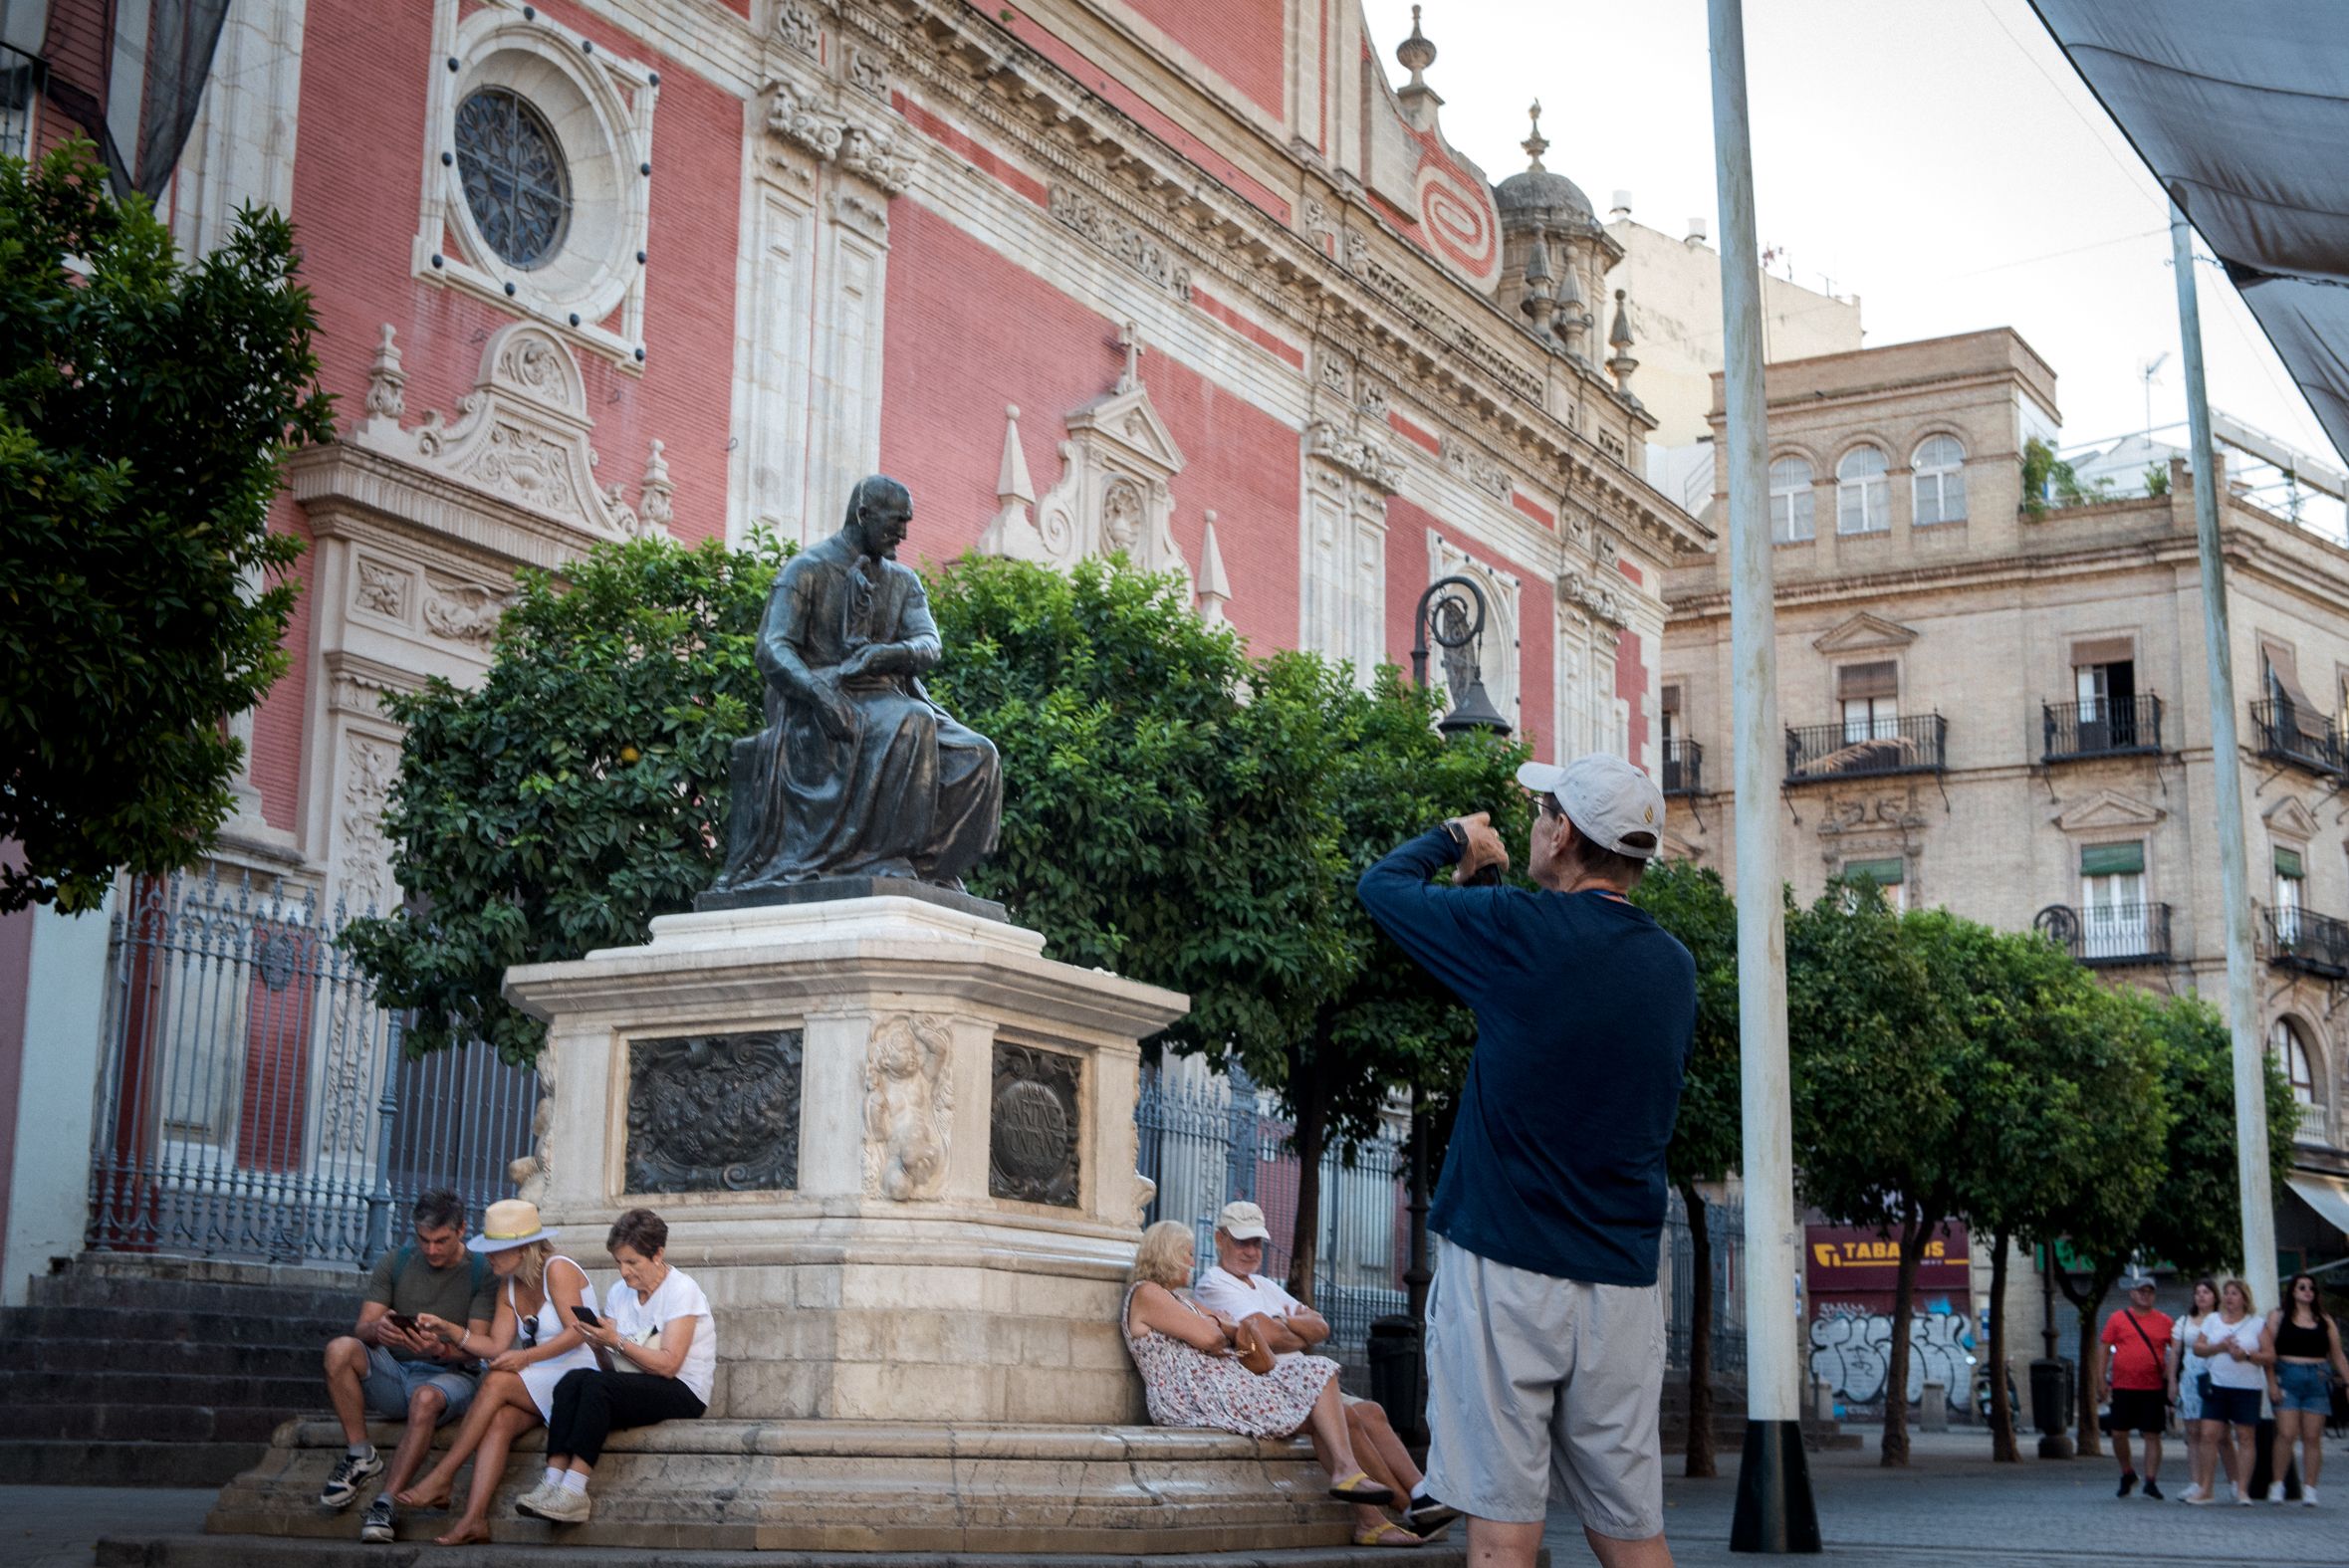 Turistas, haciendo fotos a la estatua de Martínez Montañés en Sevilla.